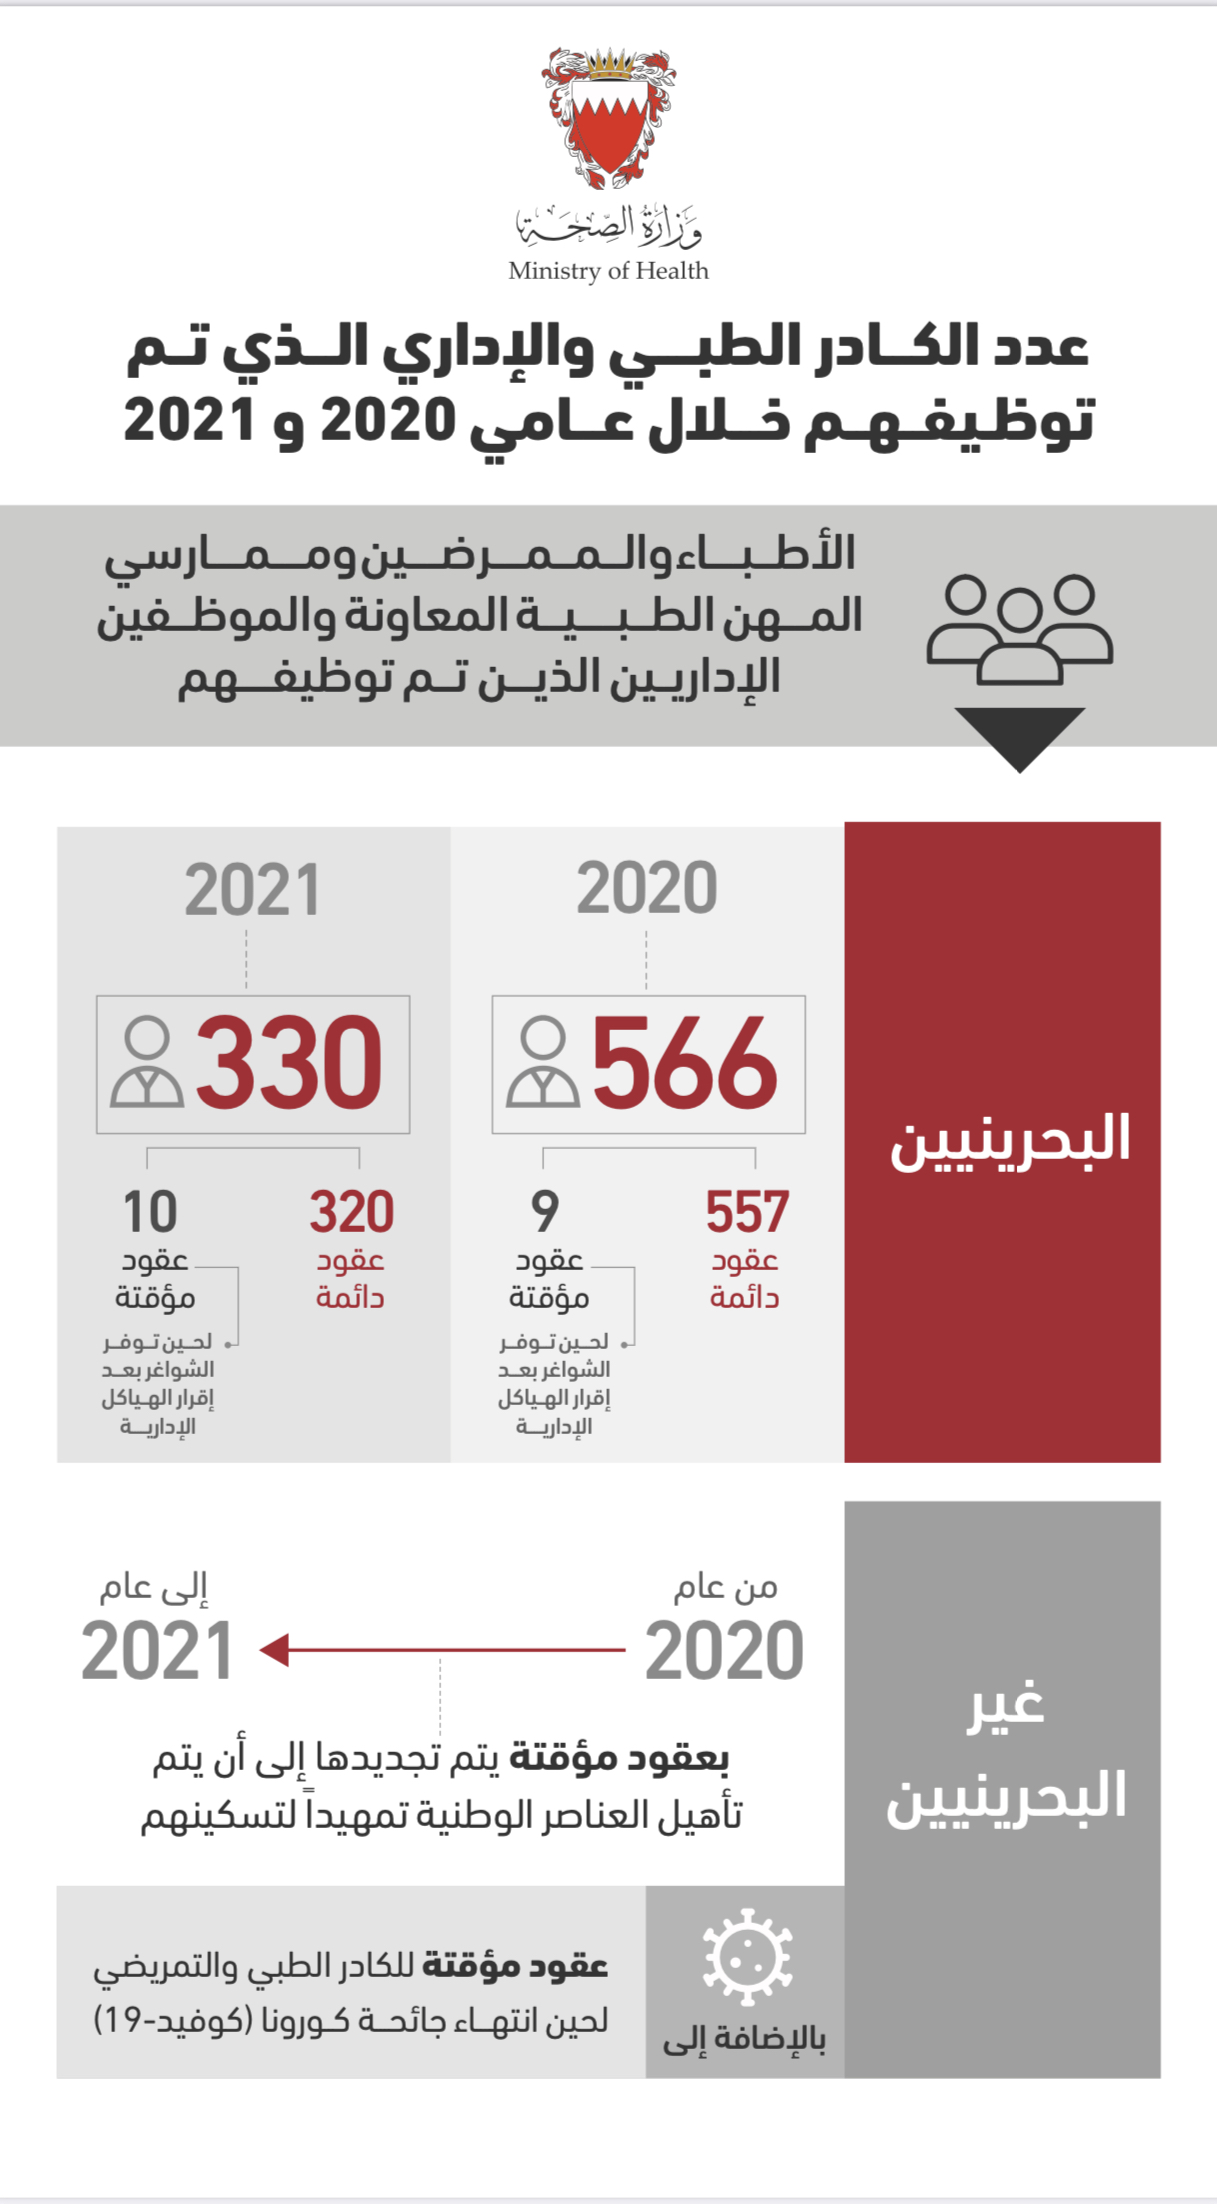 وزارة الصحة شريكٌ فاعل في دعم القطاع الصحي بمملكة البحرين وتنمية الكوادر البشرية الصحية وتحديد احتياجات القطاع الصحي من الكوادر المؤهلة